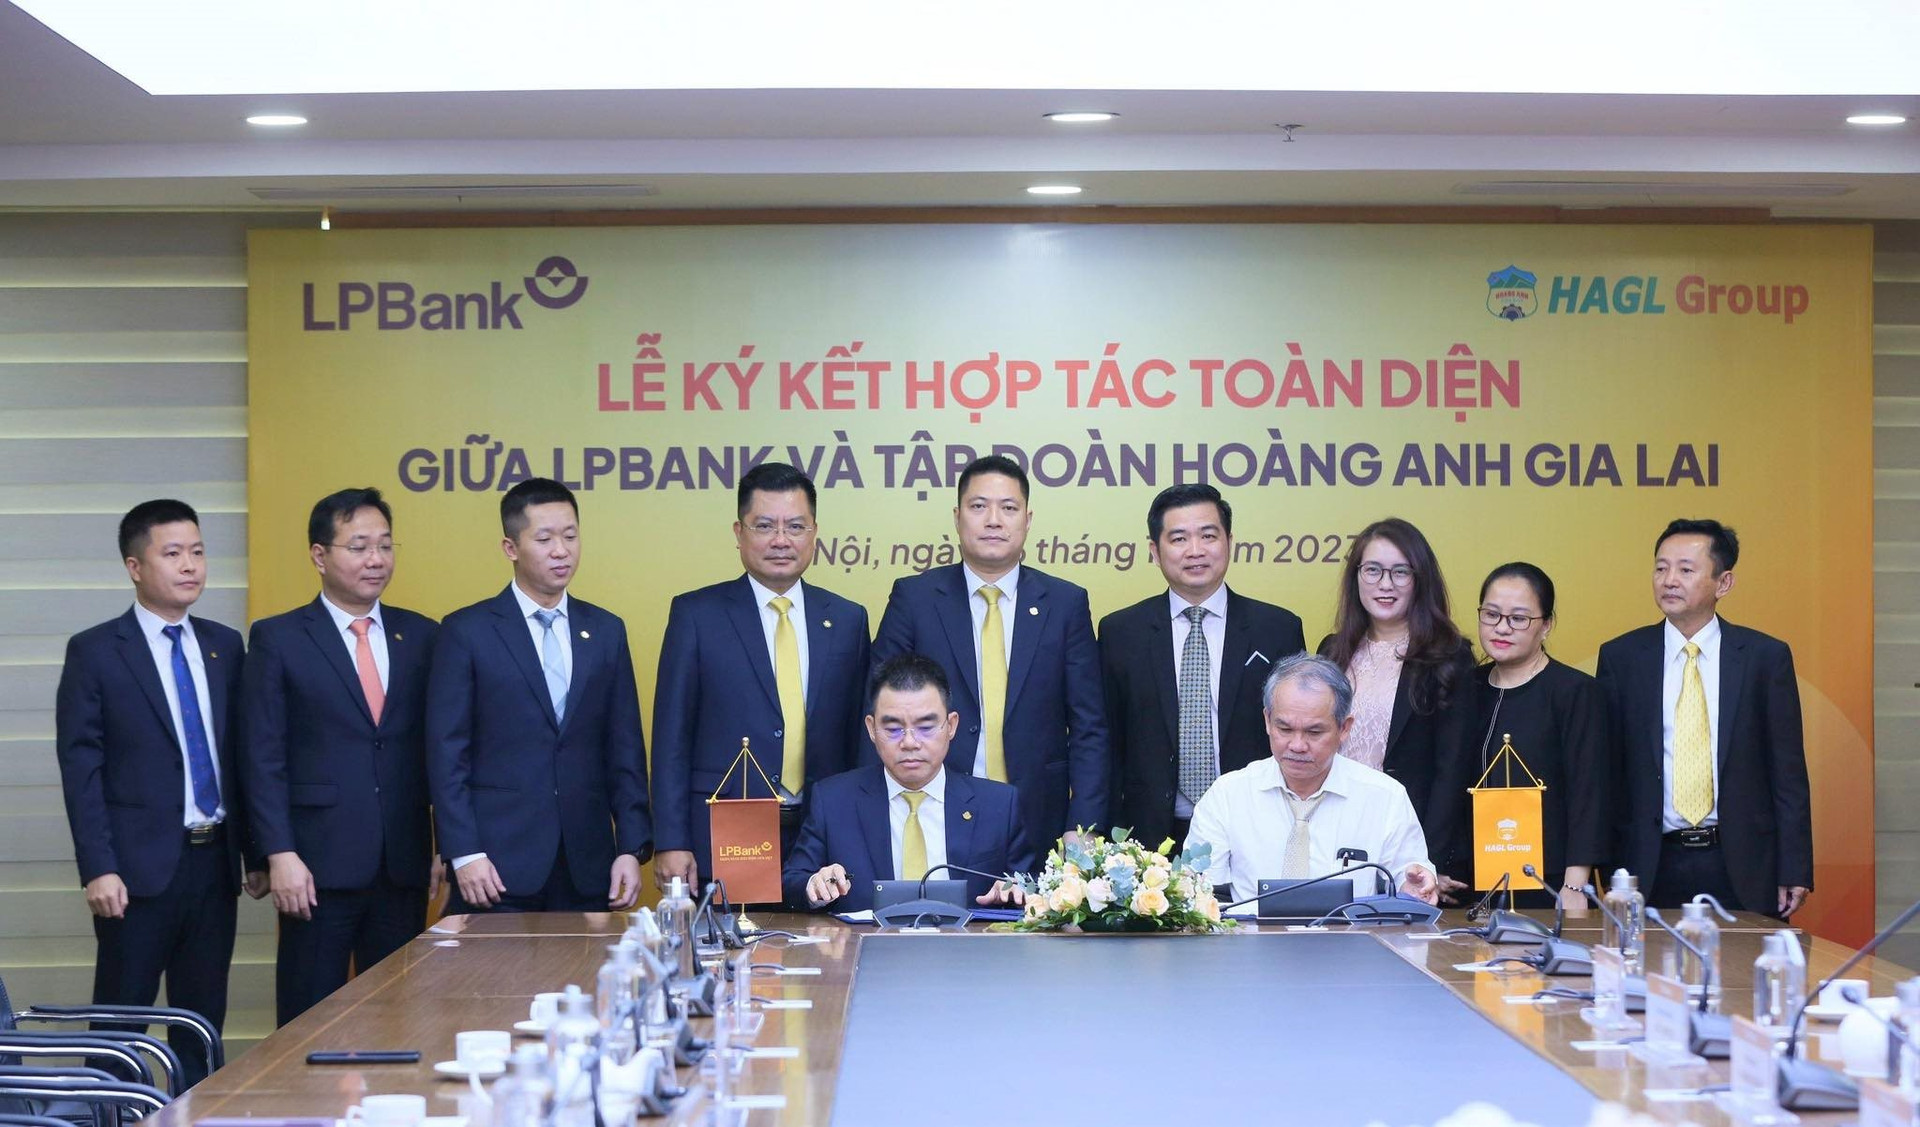 Hoàng Anh Gia Lai bắt tay với LPBank, cổ phiếu HAG “ngược dòng” tăng gần hết biên độ